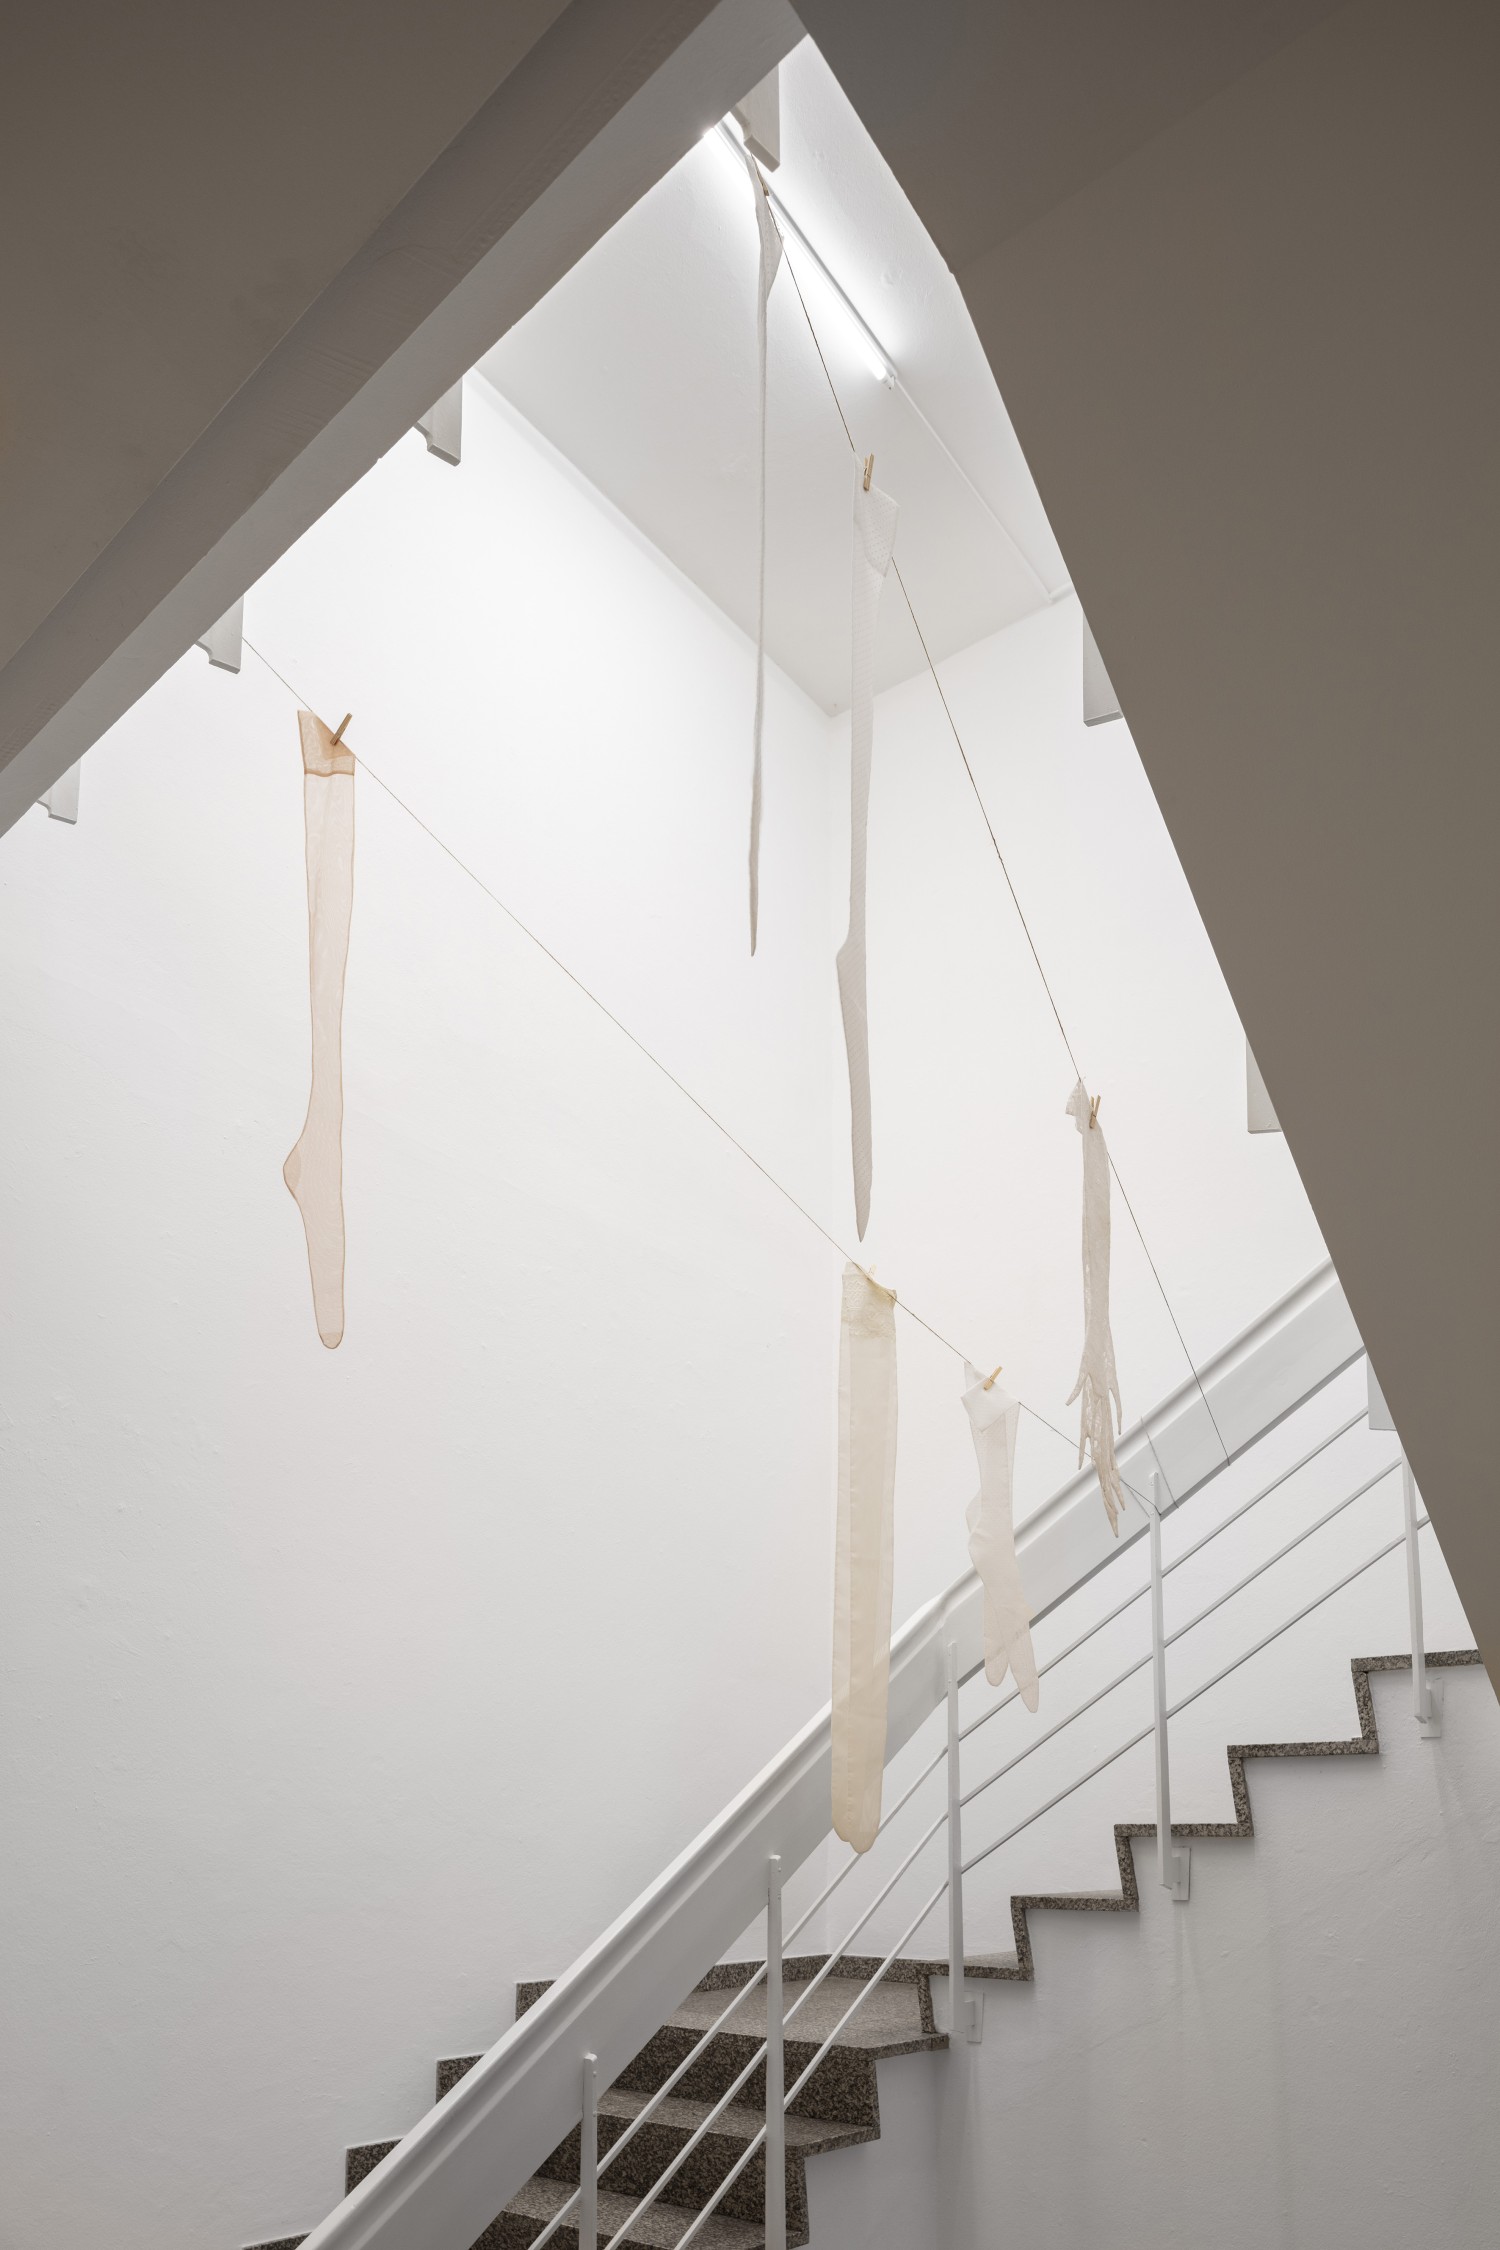 Im Treppenhaus des Kunstvereins hängen sechs übergroße Seidenstrümpfe von einer Wäscheleine. Julie Béna schafft mit der Arbeit "Le déshabillé" eine Irriation der Empfindung von Dimension und Raum.